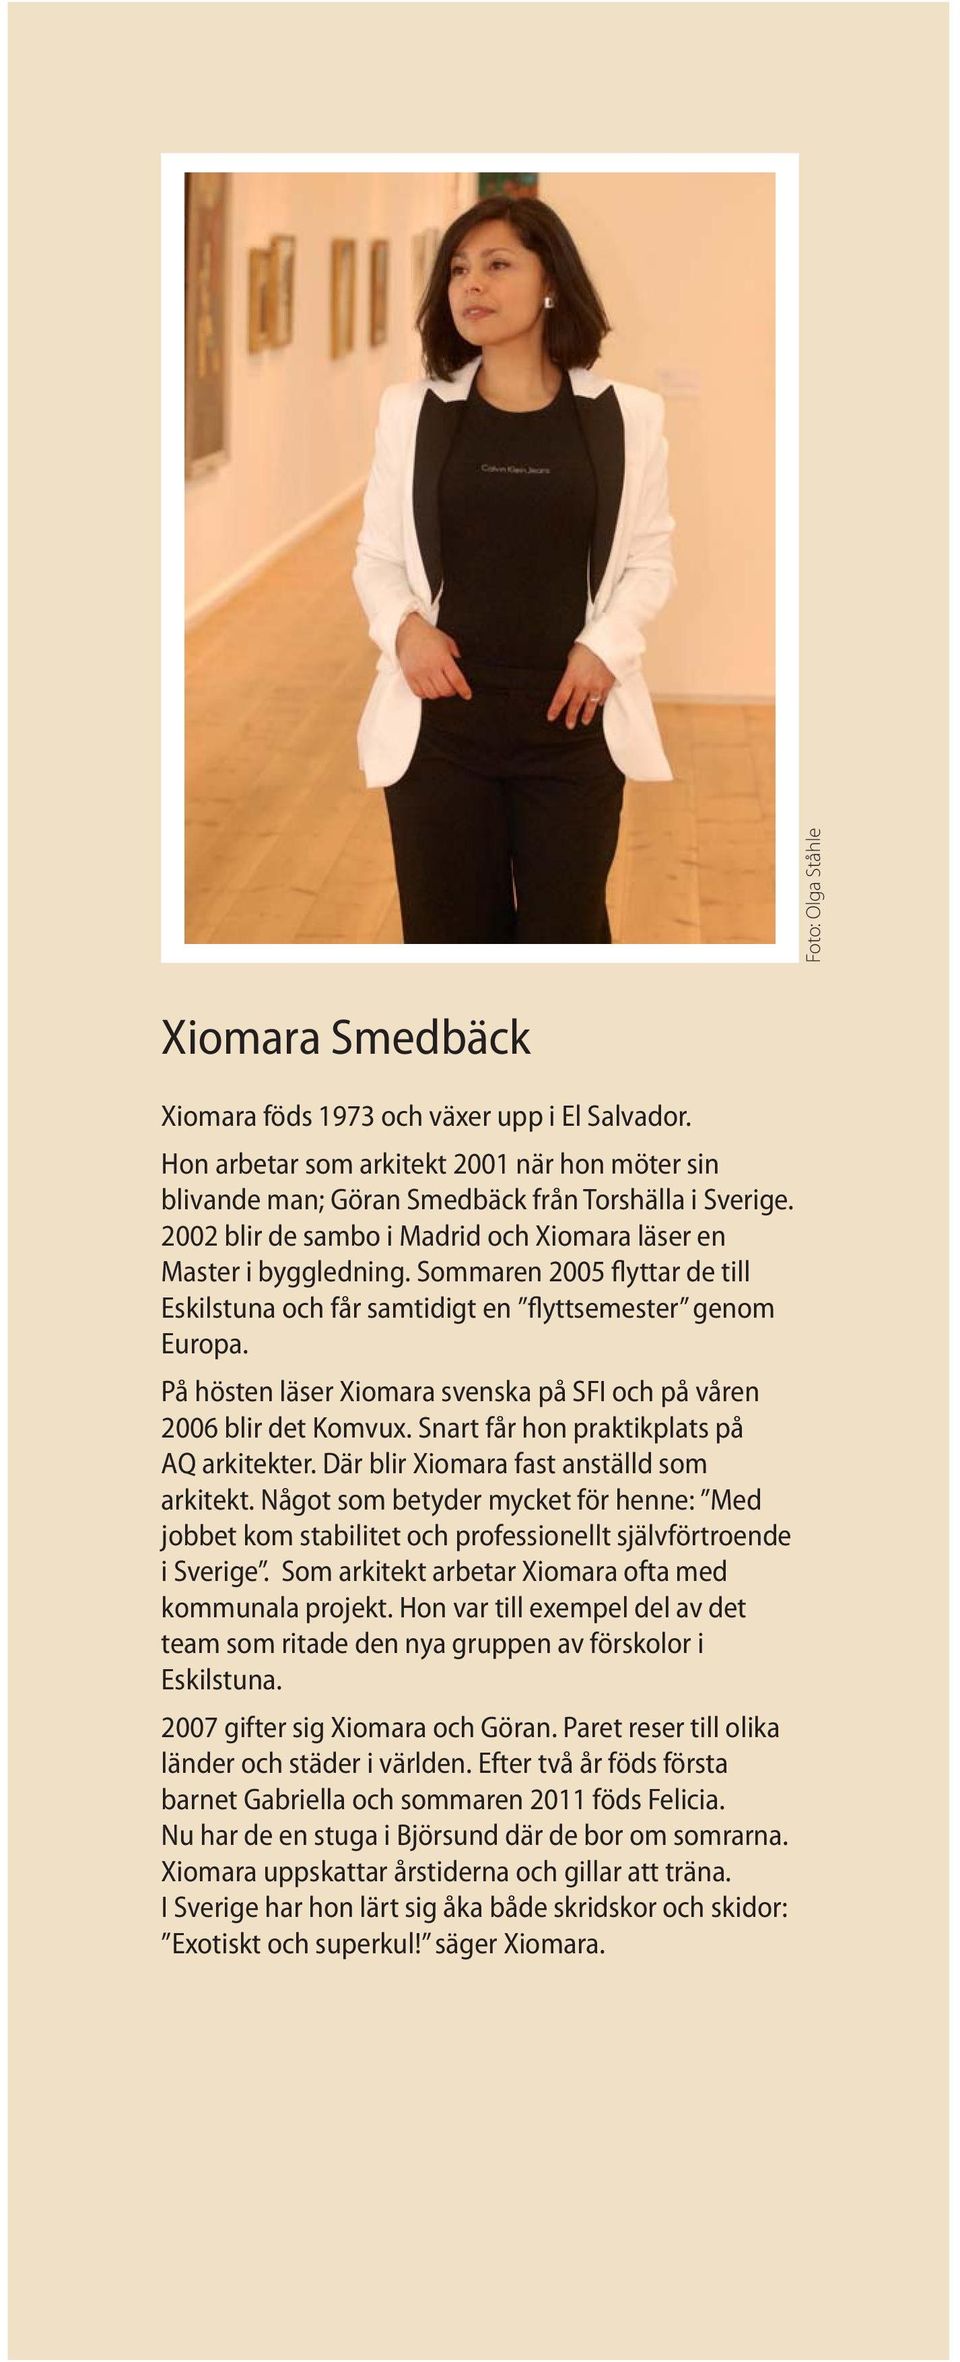 På hösten läser Xiomara svenska på SFI och på våren 2006 blir det Komvux. Snart får hon praktikplats på AQ arkitekter. Där blir Xiomara fast anställd som arkitekt.